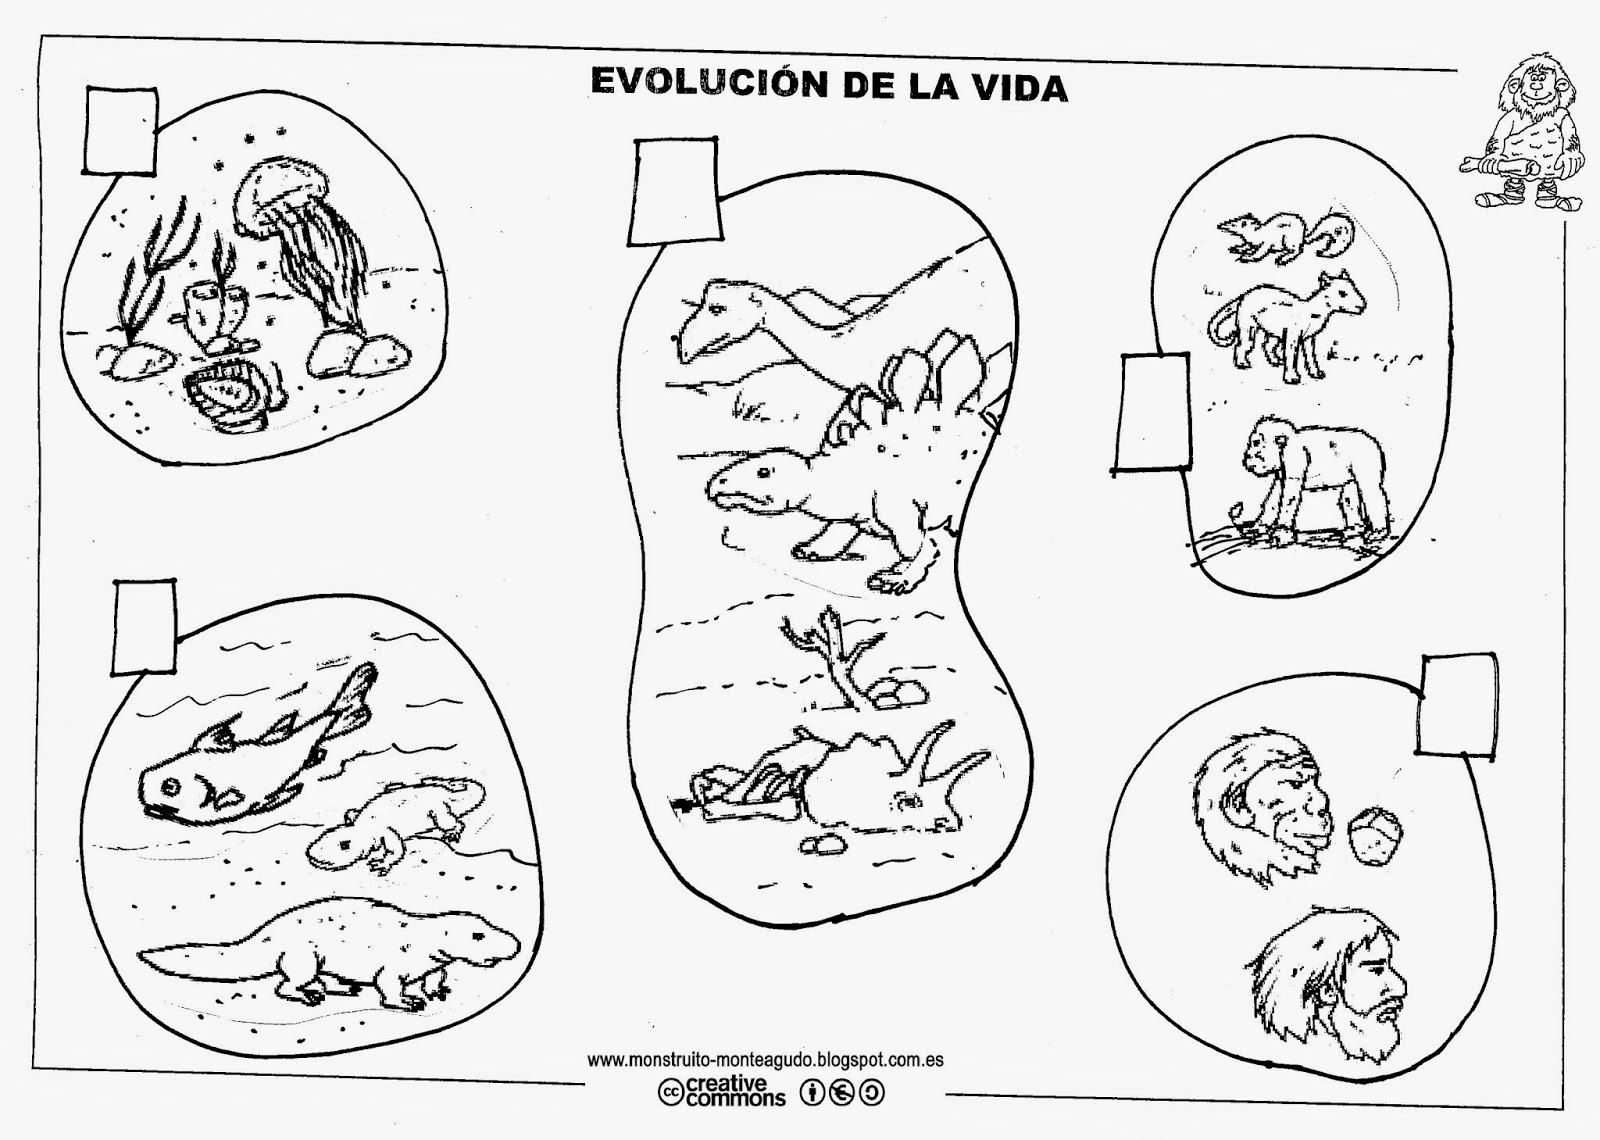 Fichas De La Prehistoria El Monstruito en Monteagudo: La Prehistoria (I). Portada y Evolución.